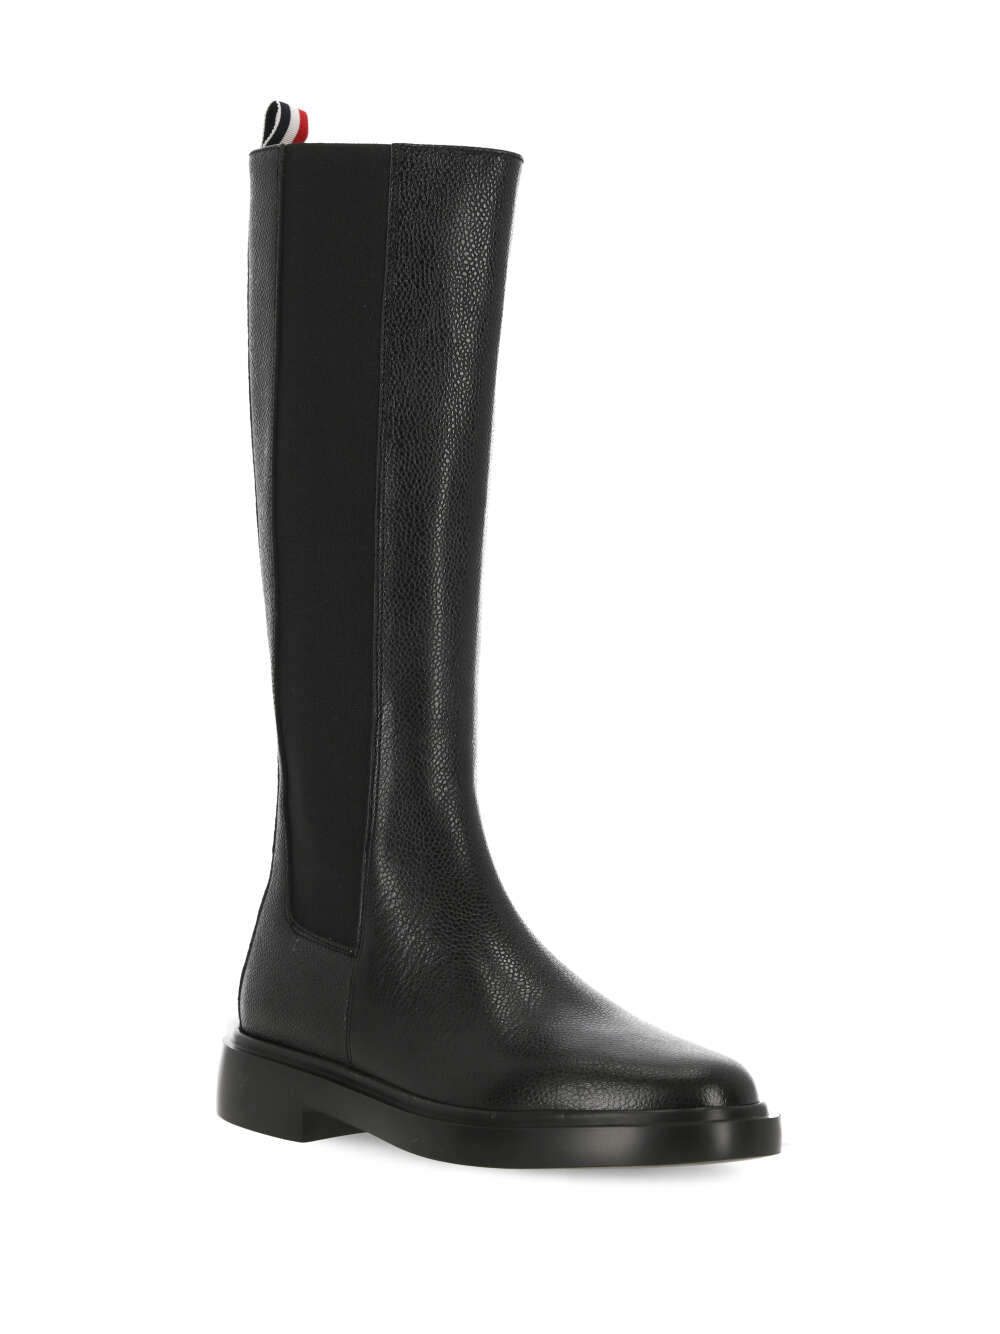 Thom Browne FFB138A Woman Black Boots - Zuklat